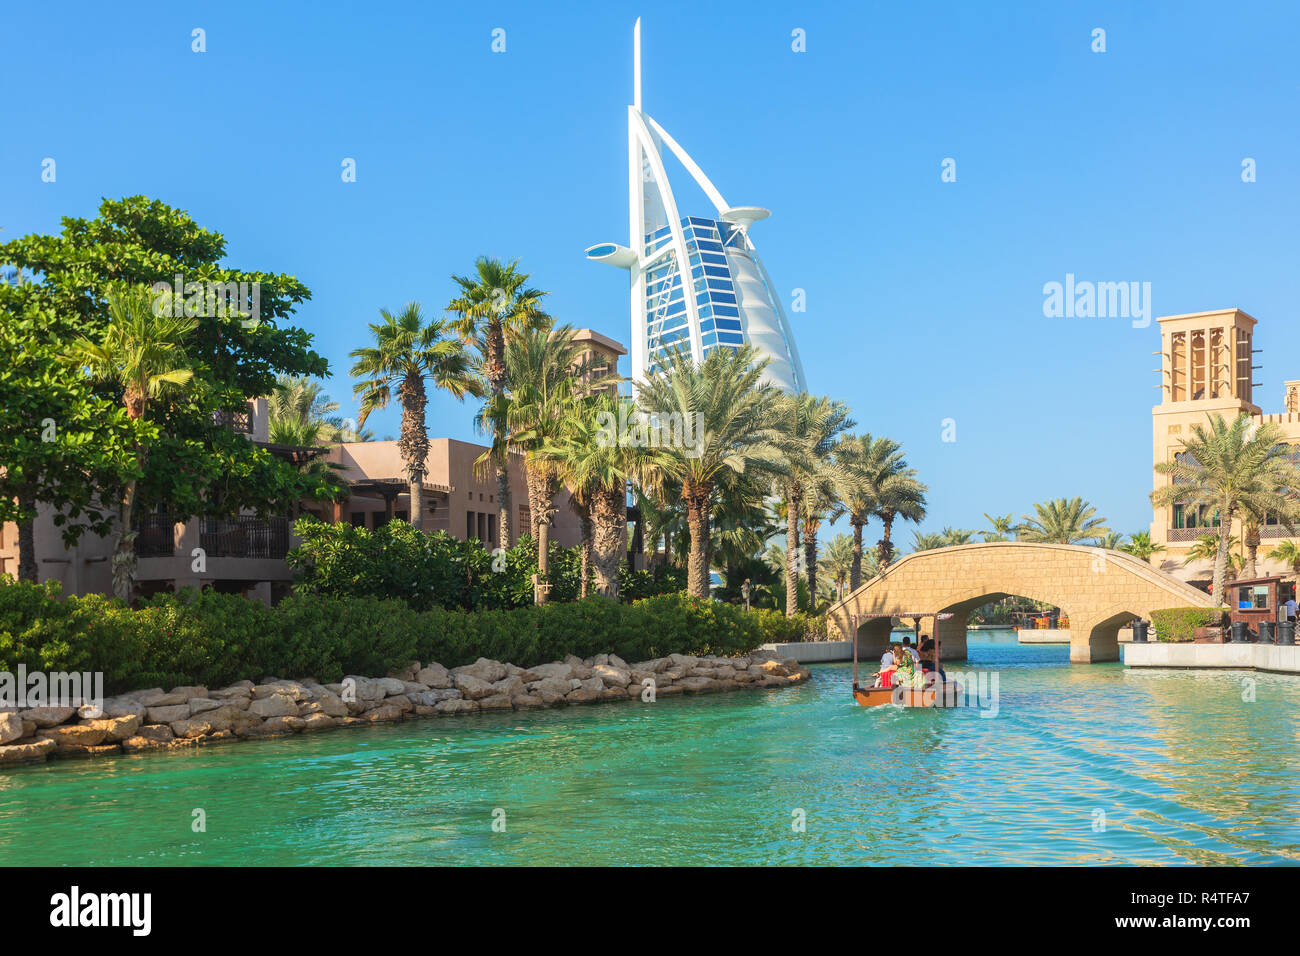 DUBAI, VAE - 12 Nov, 2018: Blick auf das Burj Al Arab Hotel von Madinat Jumeirah Hotels. Madinat ist ein luxuriöses Resort mit Hotels und Souk abdecken Stockfoto